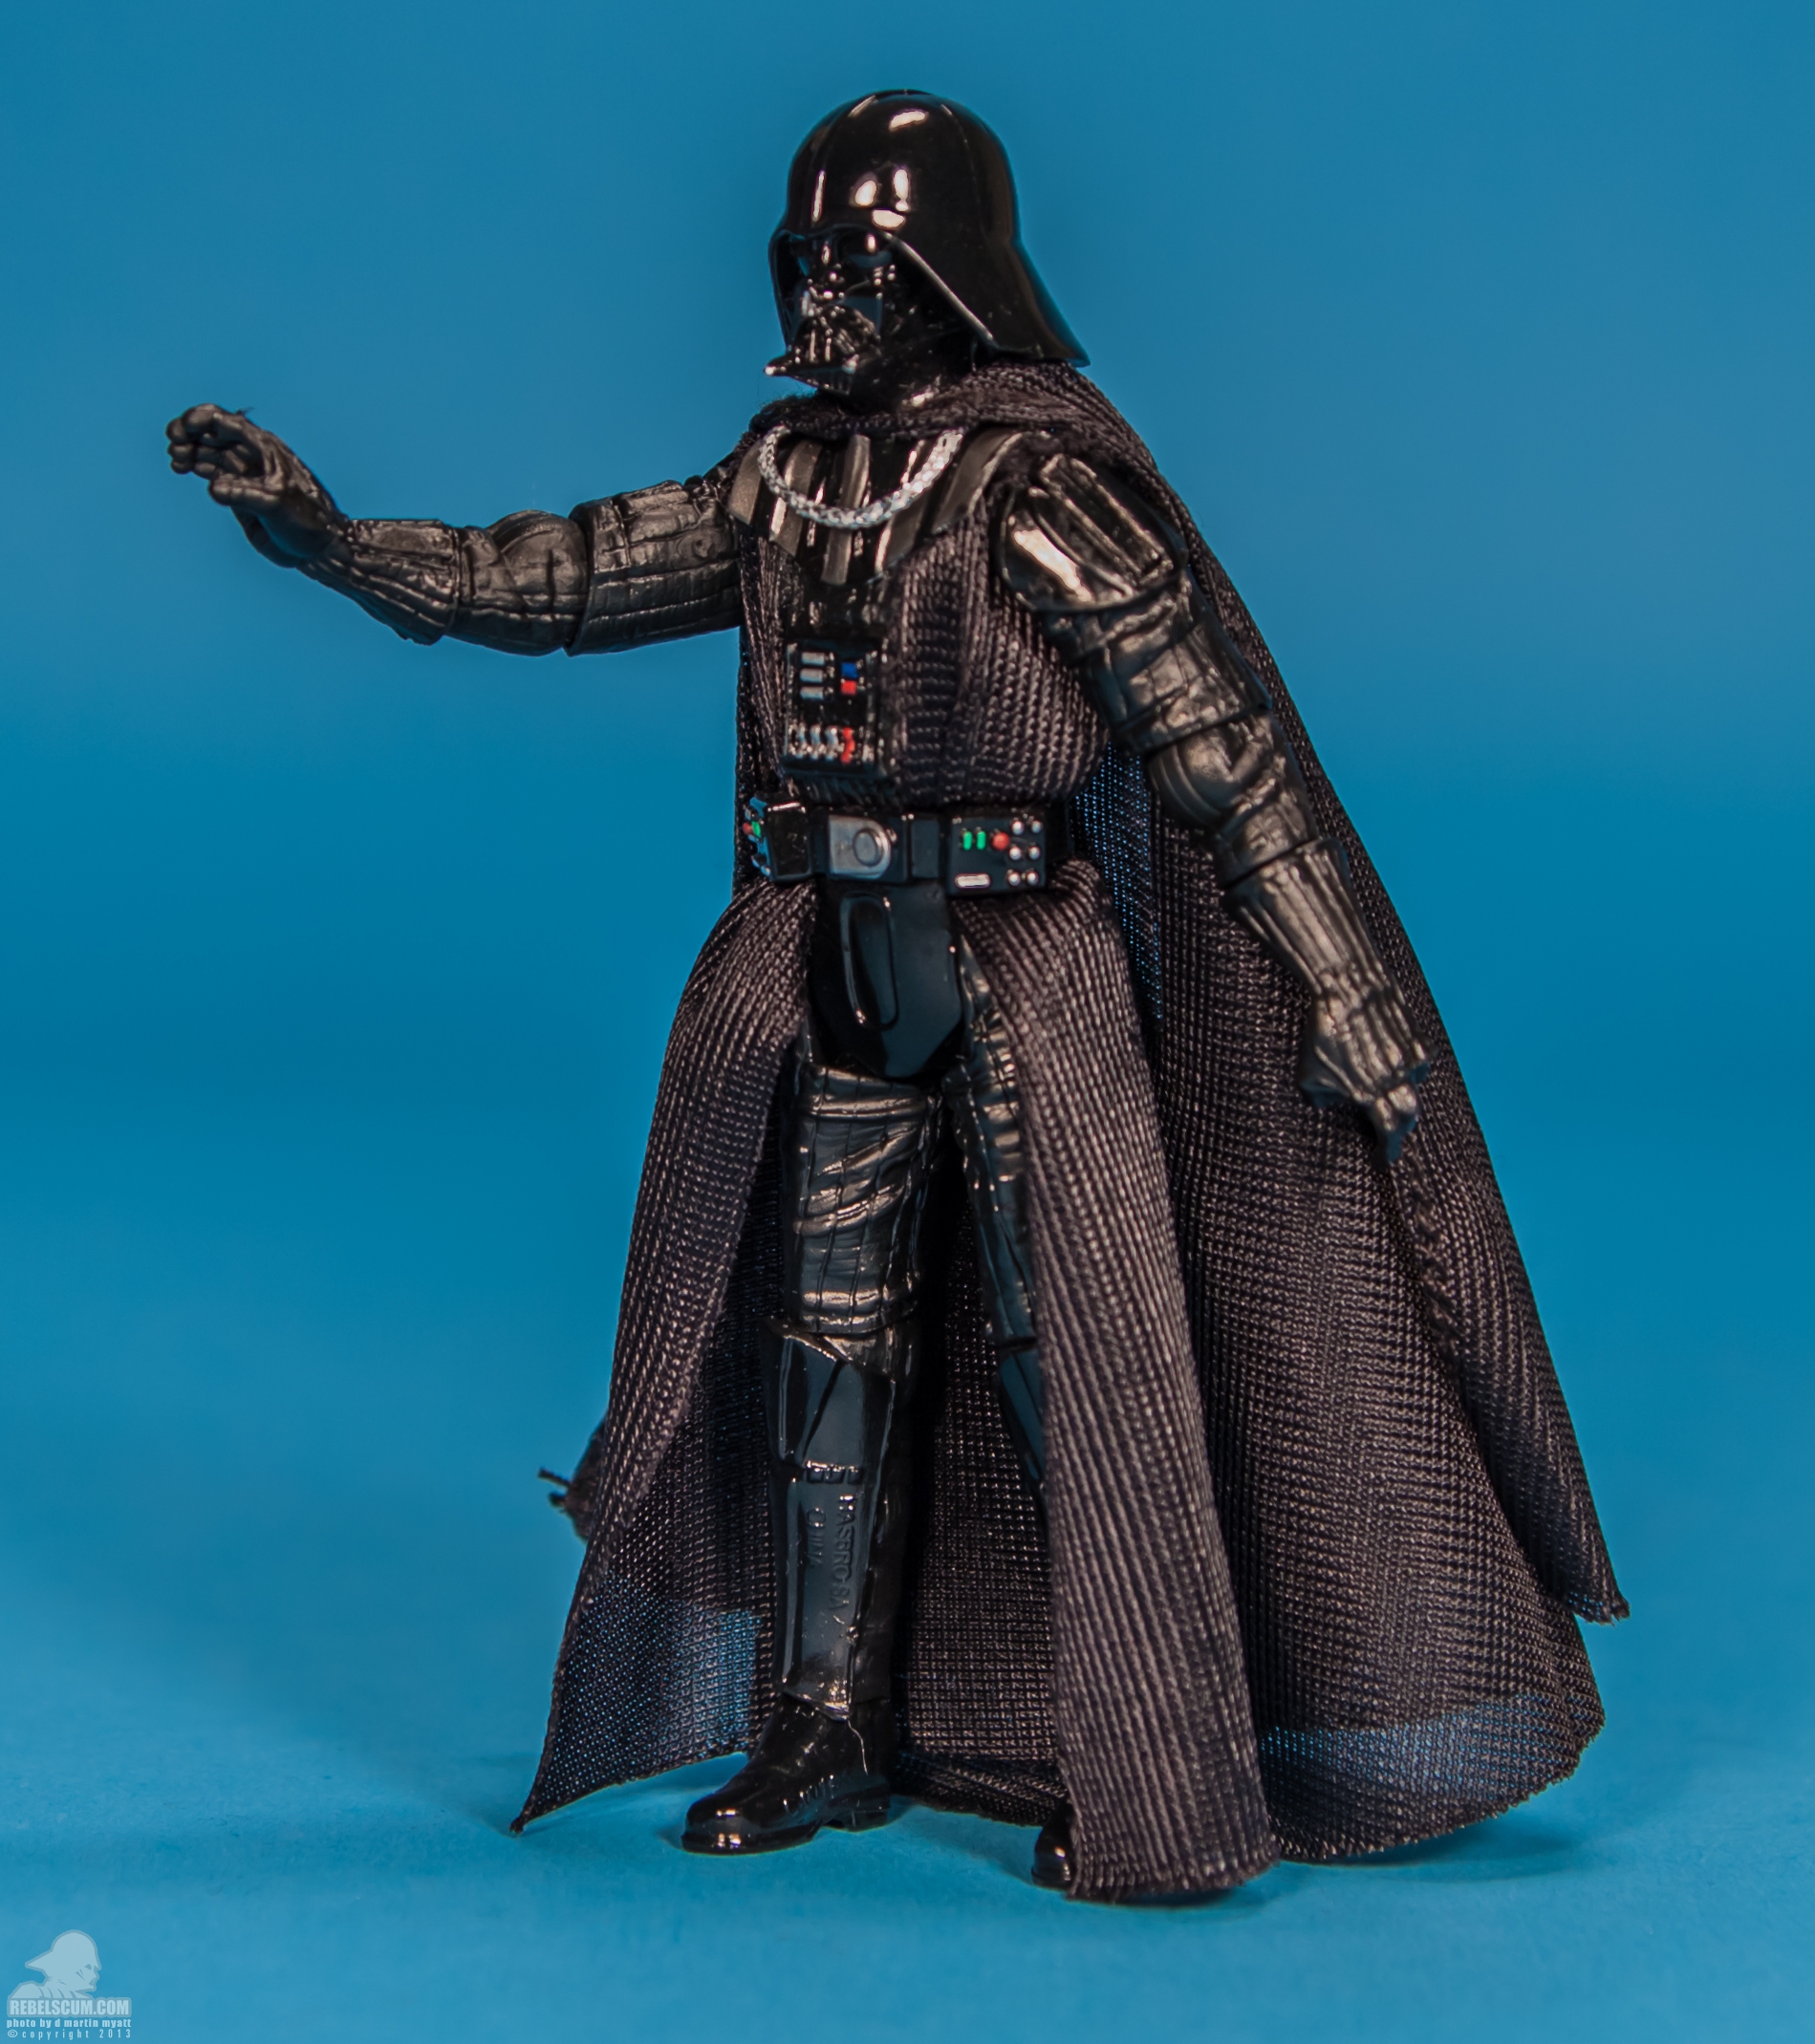 The-Black-Series-Star-Wars-Hasbro-06-Darth-Vader-003.jpg